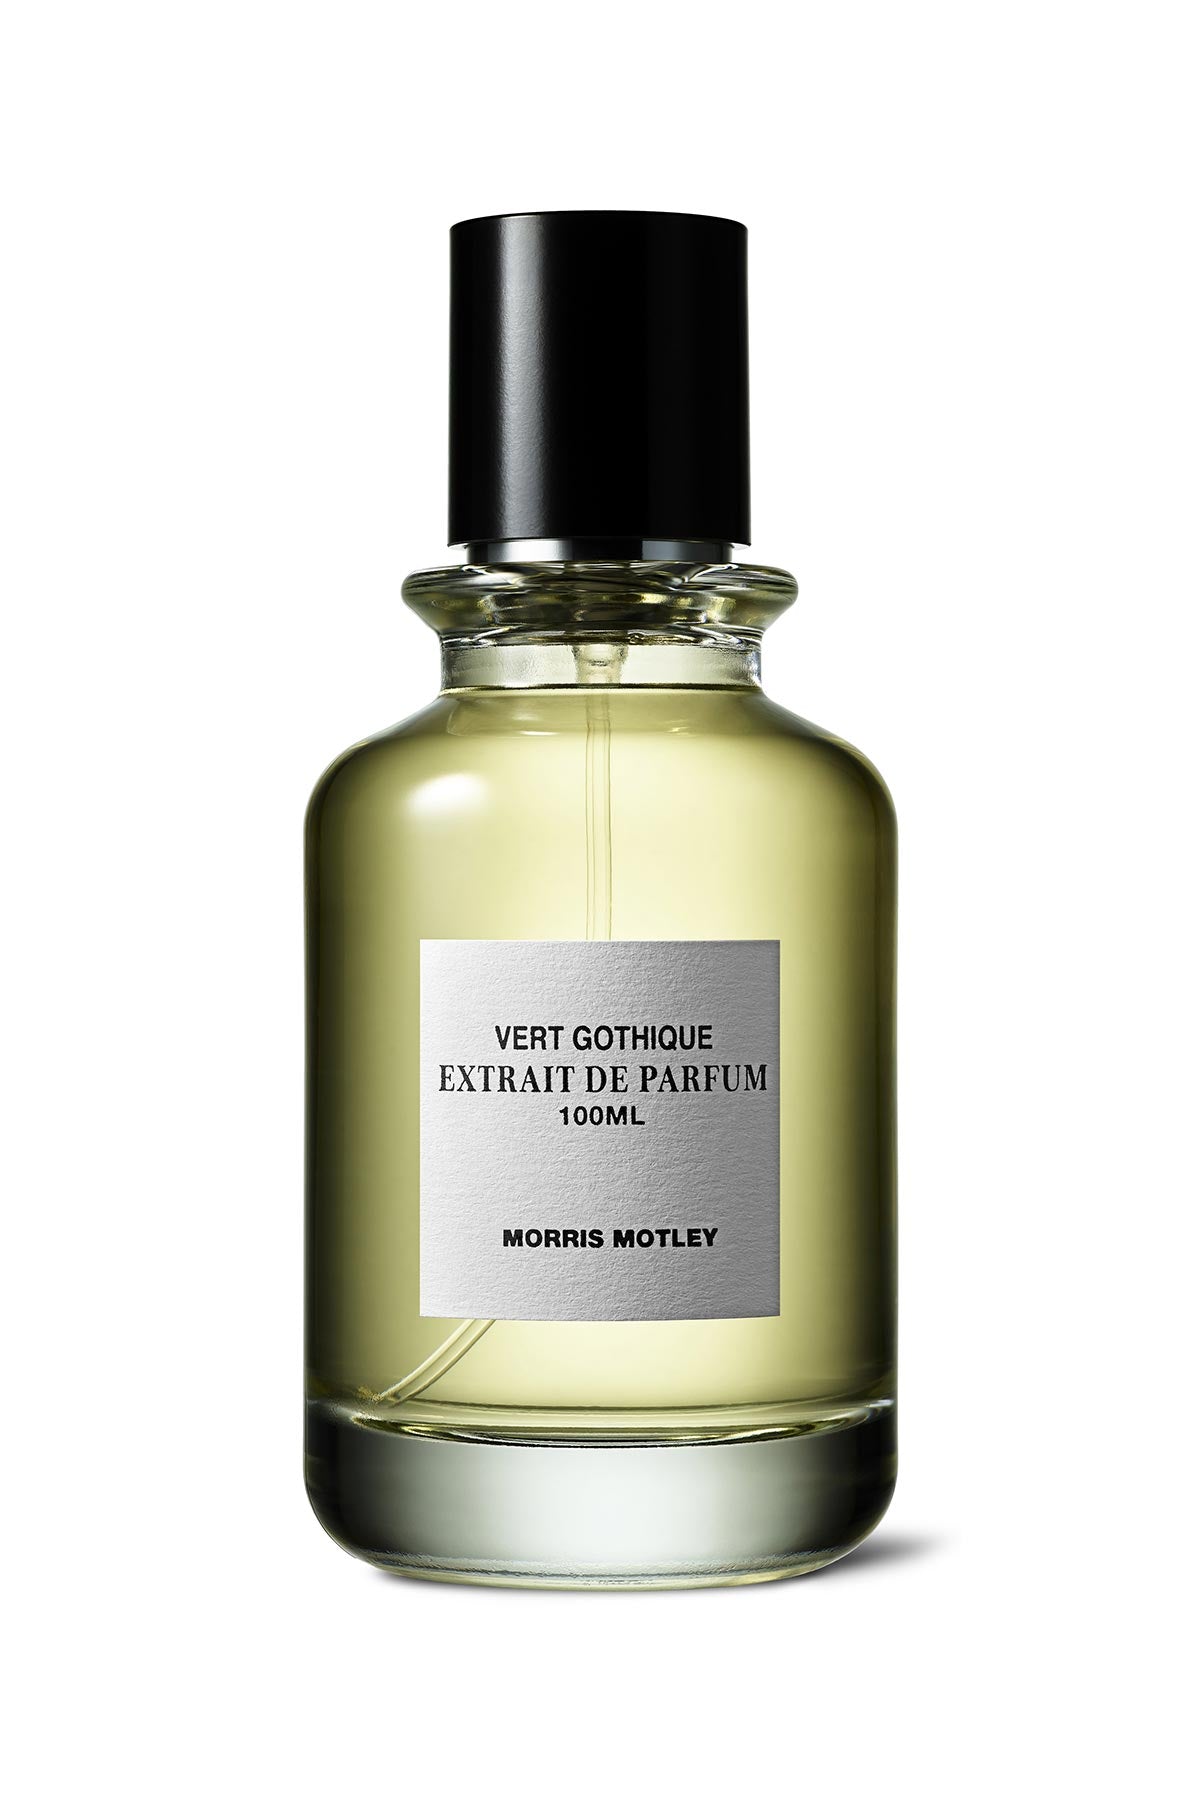 Morris Motley Vert Gothique Extrait de Parfum